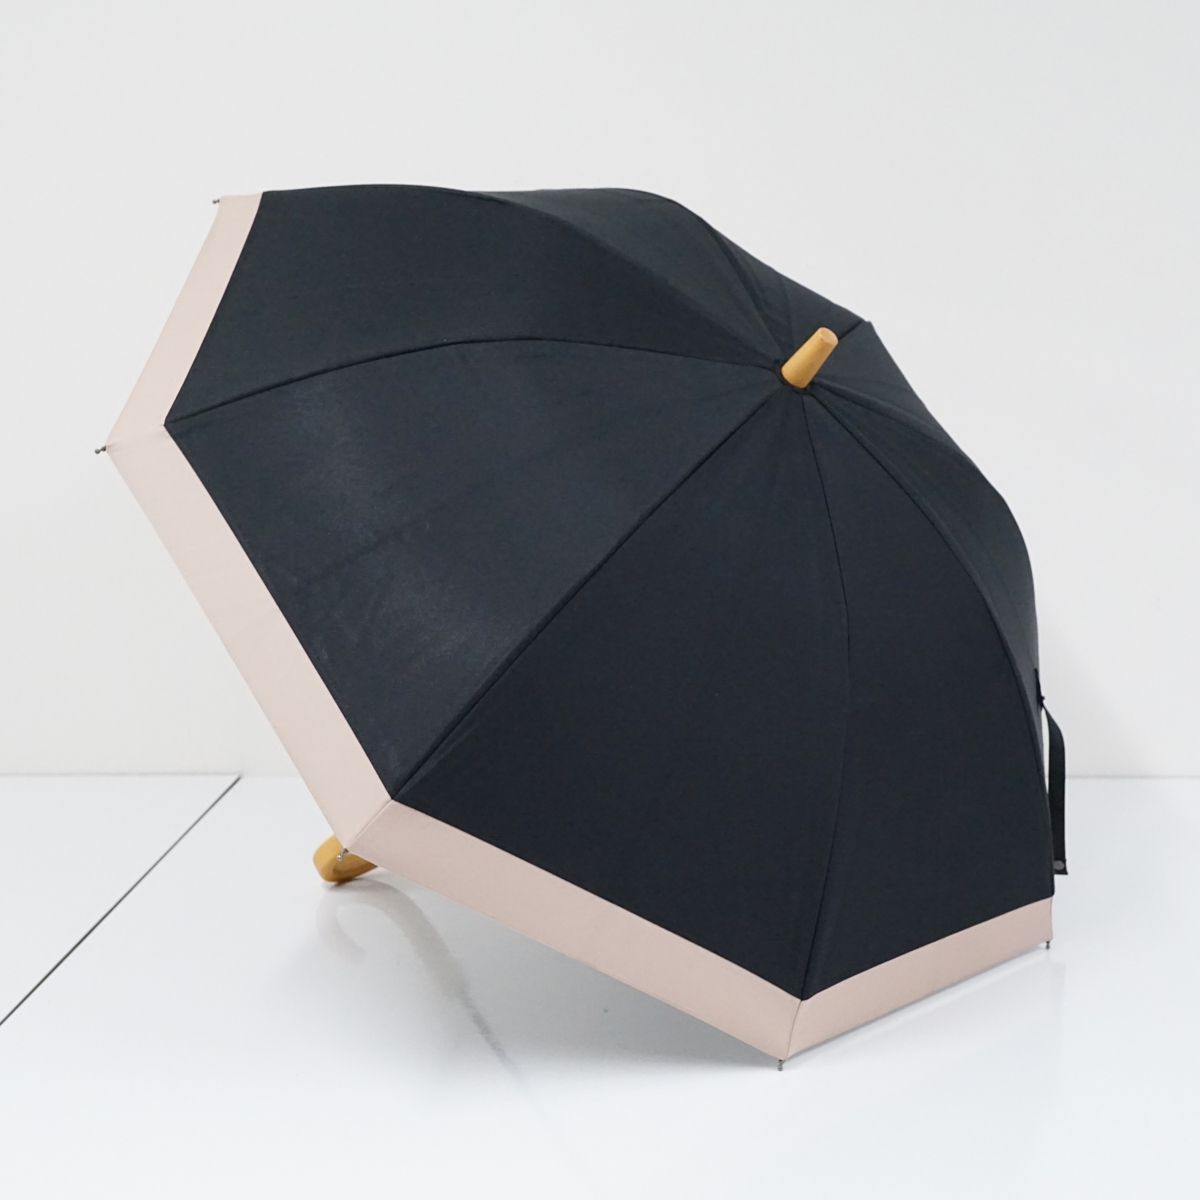 サンバリア100 完全遮光日傘 USED美品 ショートサイズ コンビ ブラック